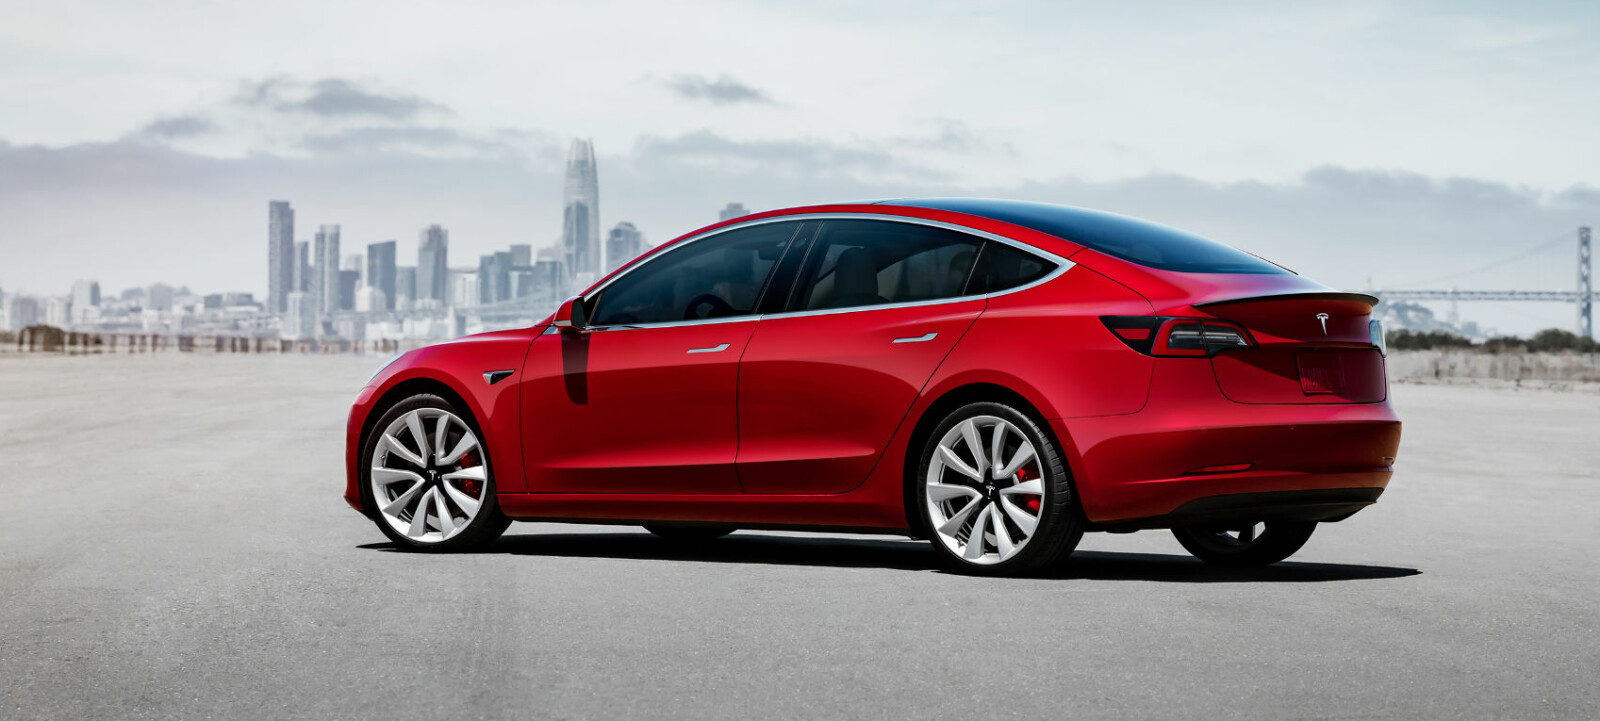 I USA solgte Tesla nesten syv ganger flere eksemplarer av Model 3 i oktober enn Model S og Model X samlet. Snart starter salget av Model 3 i Norge også.